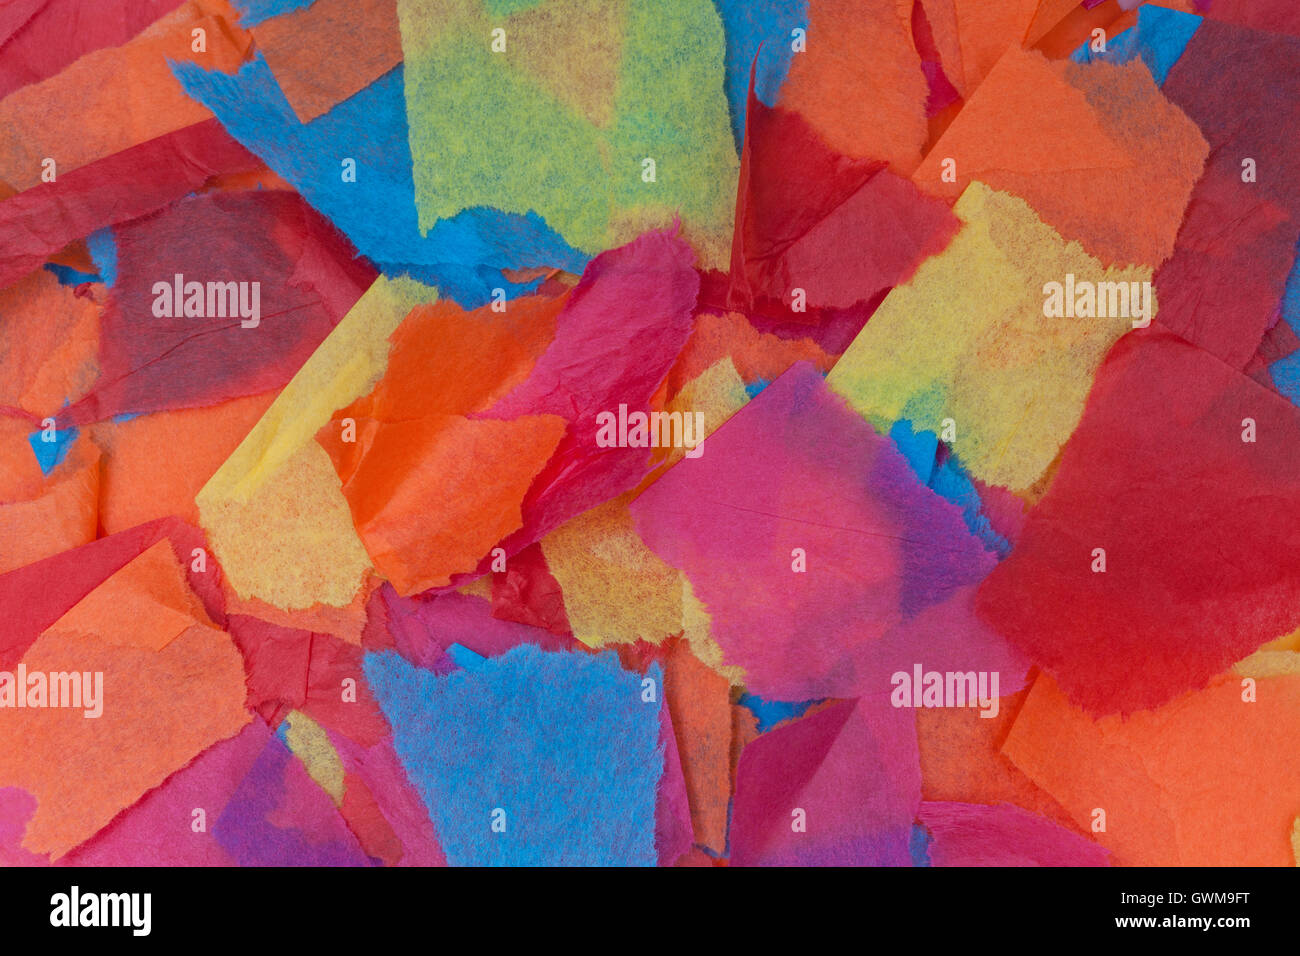 La carta velina colorata strappata in pezzature di diverse dimensioni Foto  stock - Alamy